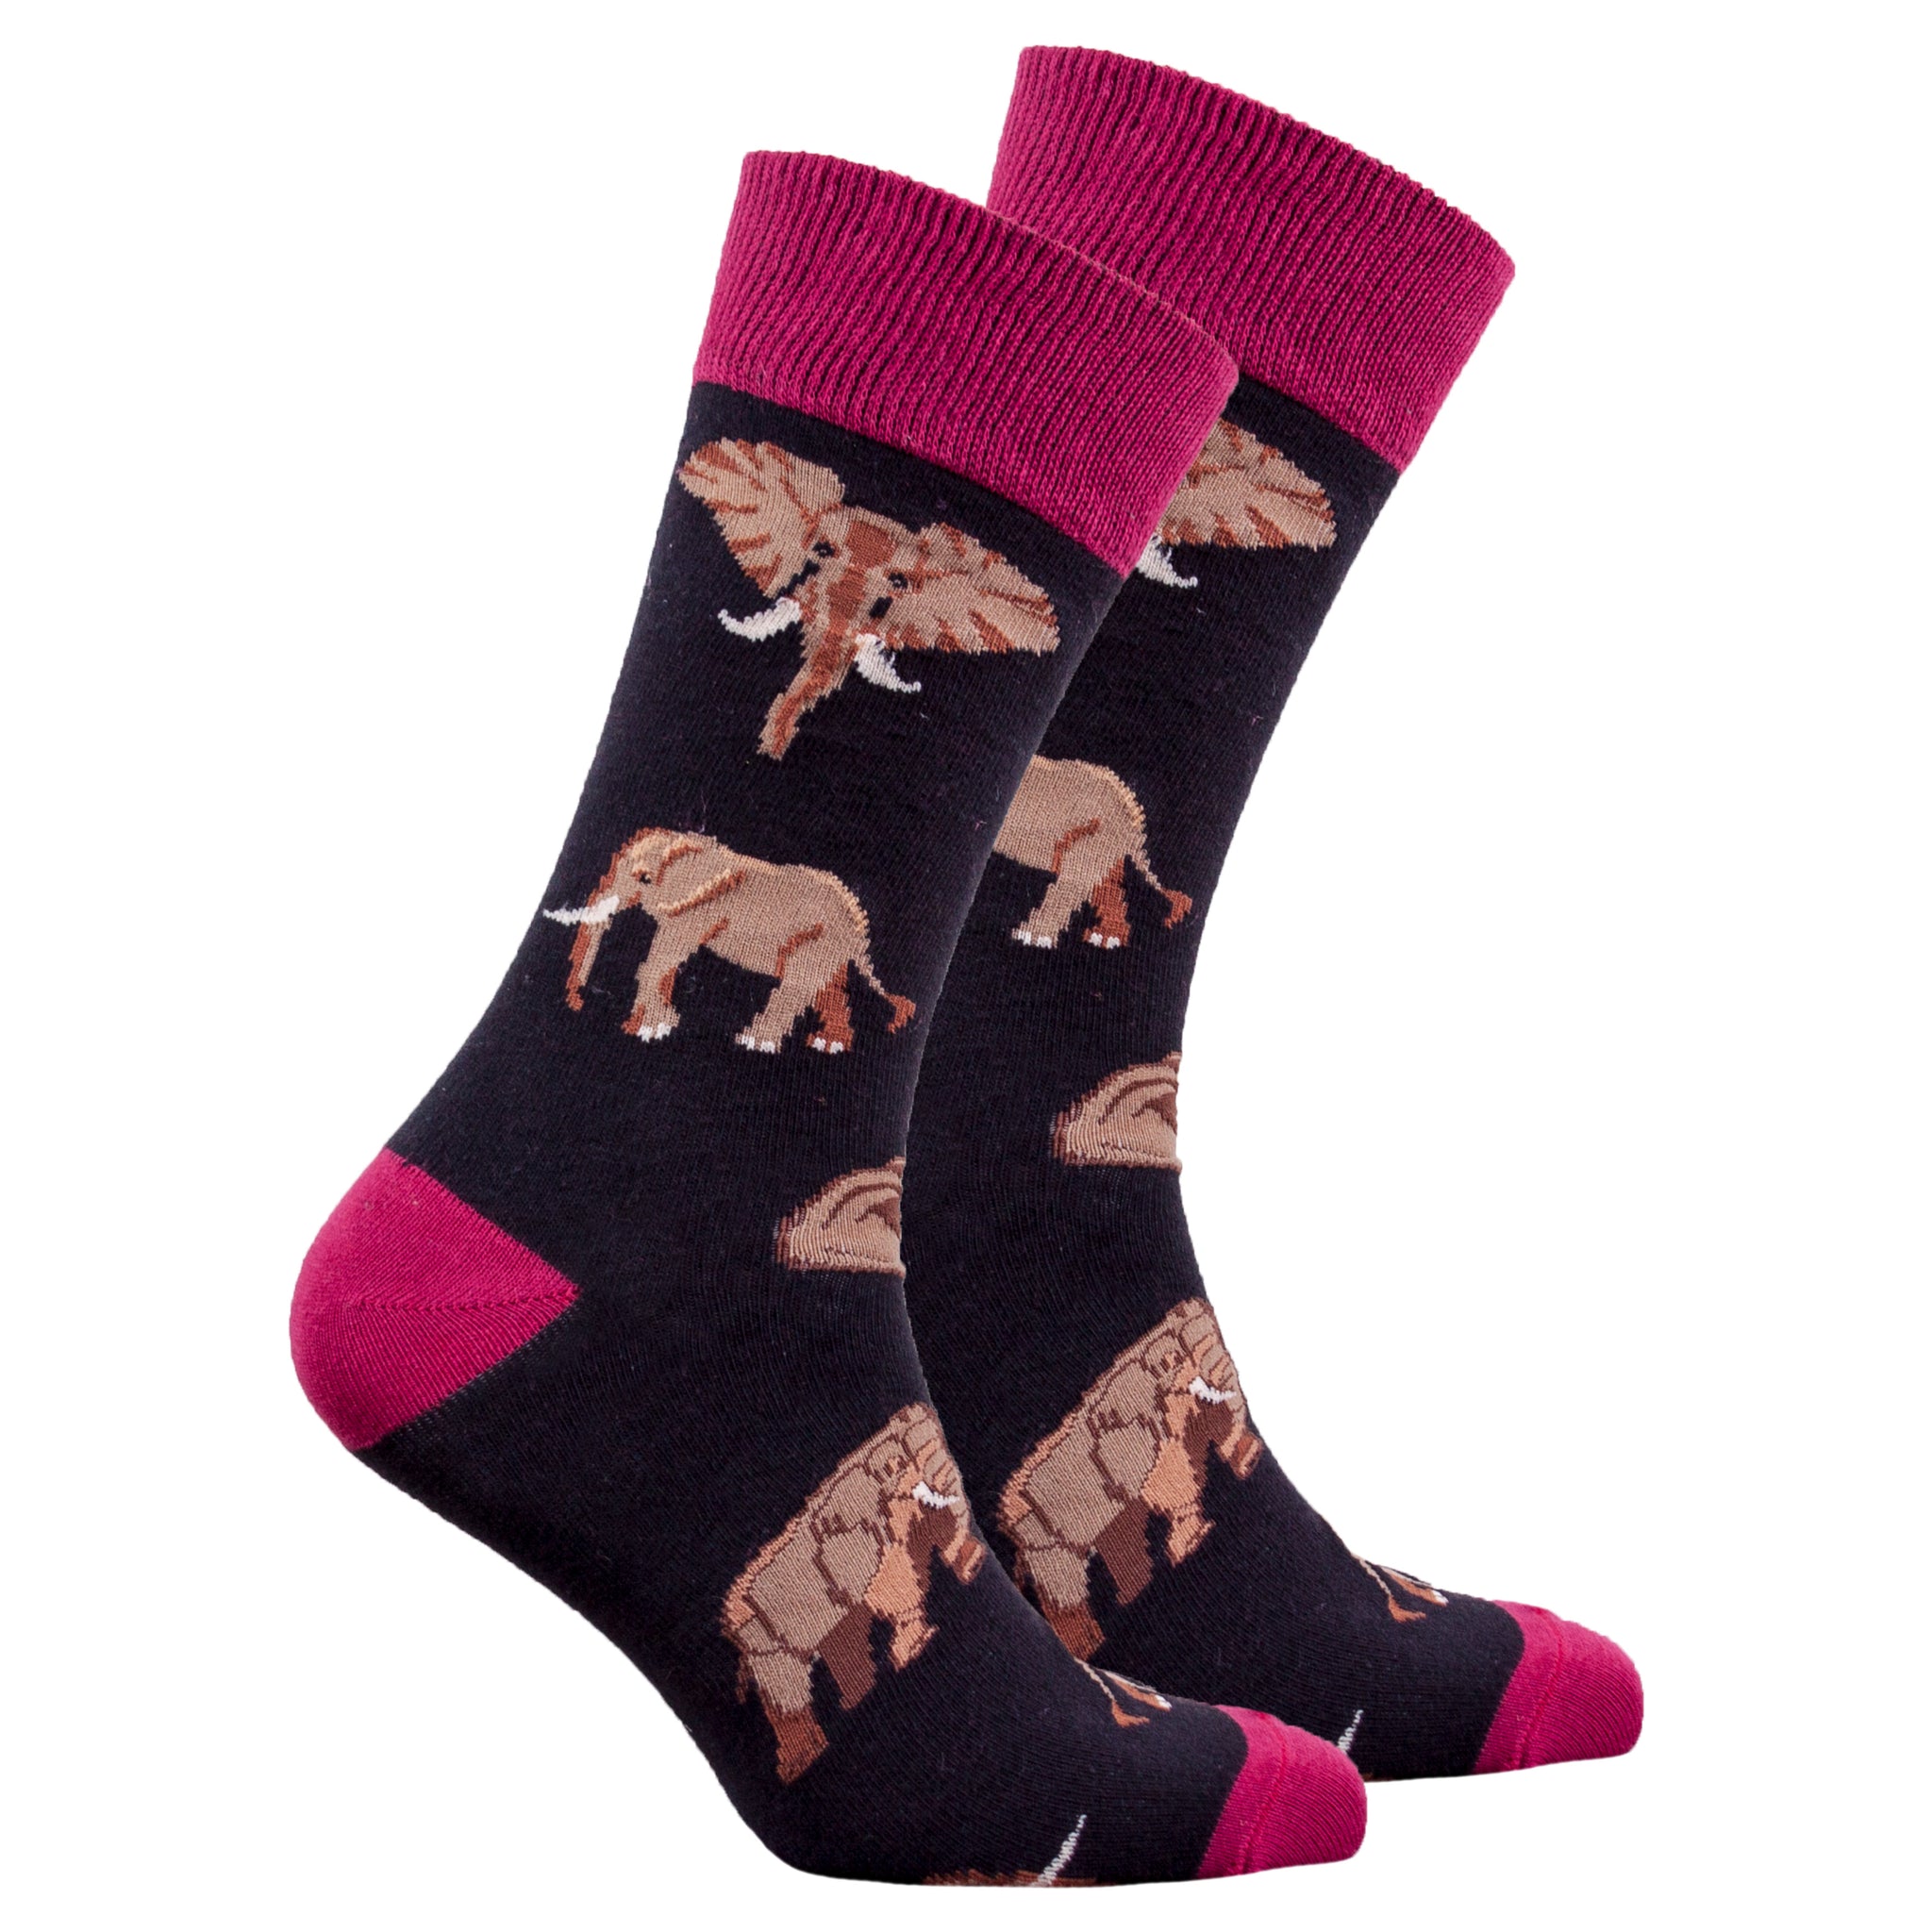 Men's Elephant Socks